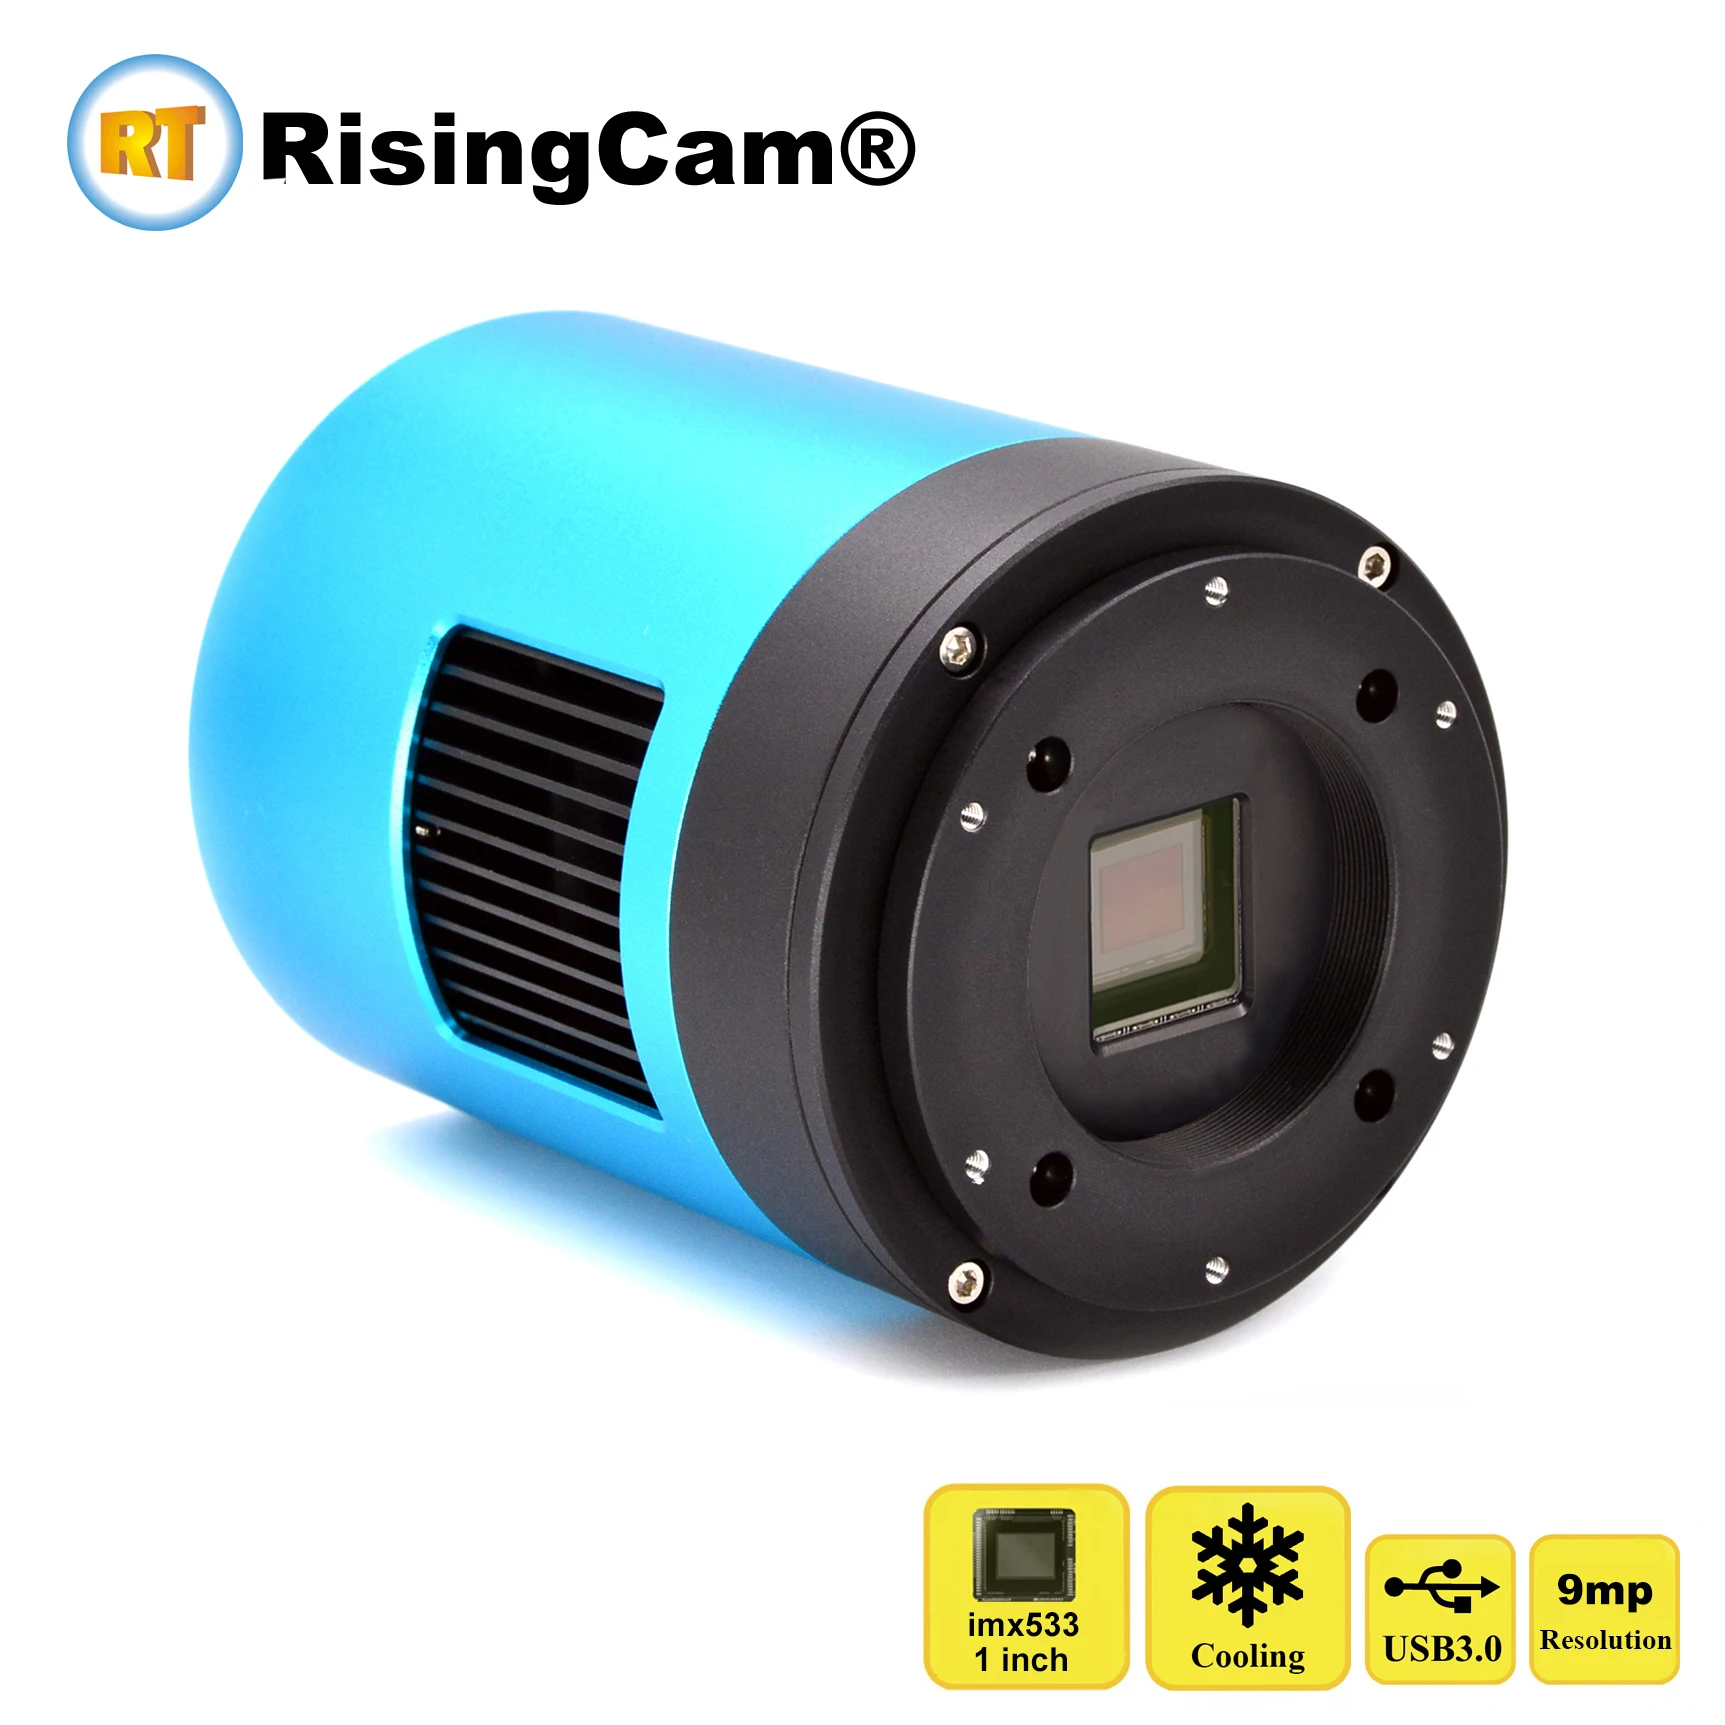 RisingCam USB3.0 9mp imx533 1-дюймовый CMOS-сенсор астрономический телескоп крутая астрономическая камера с контролем температуры охлаждения TE